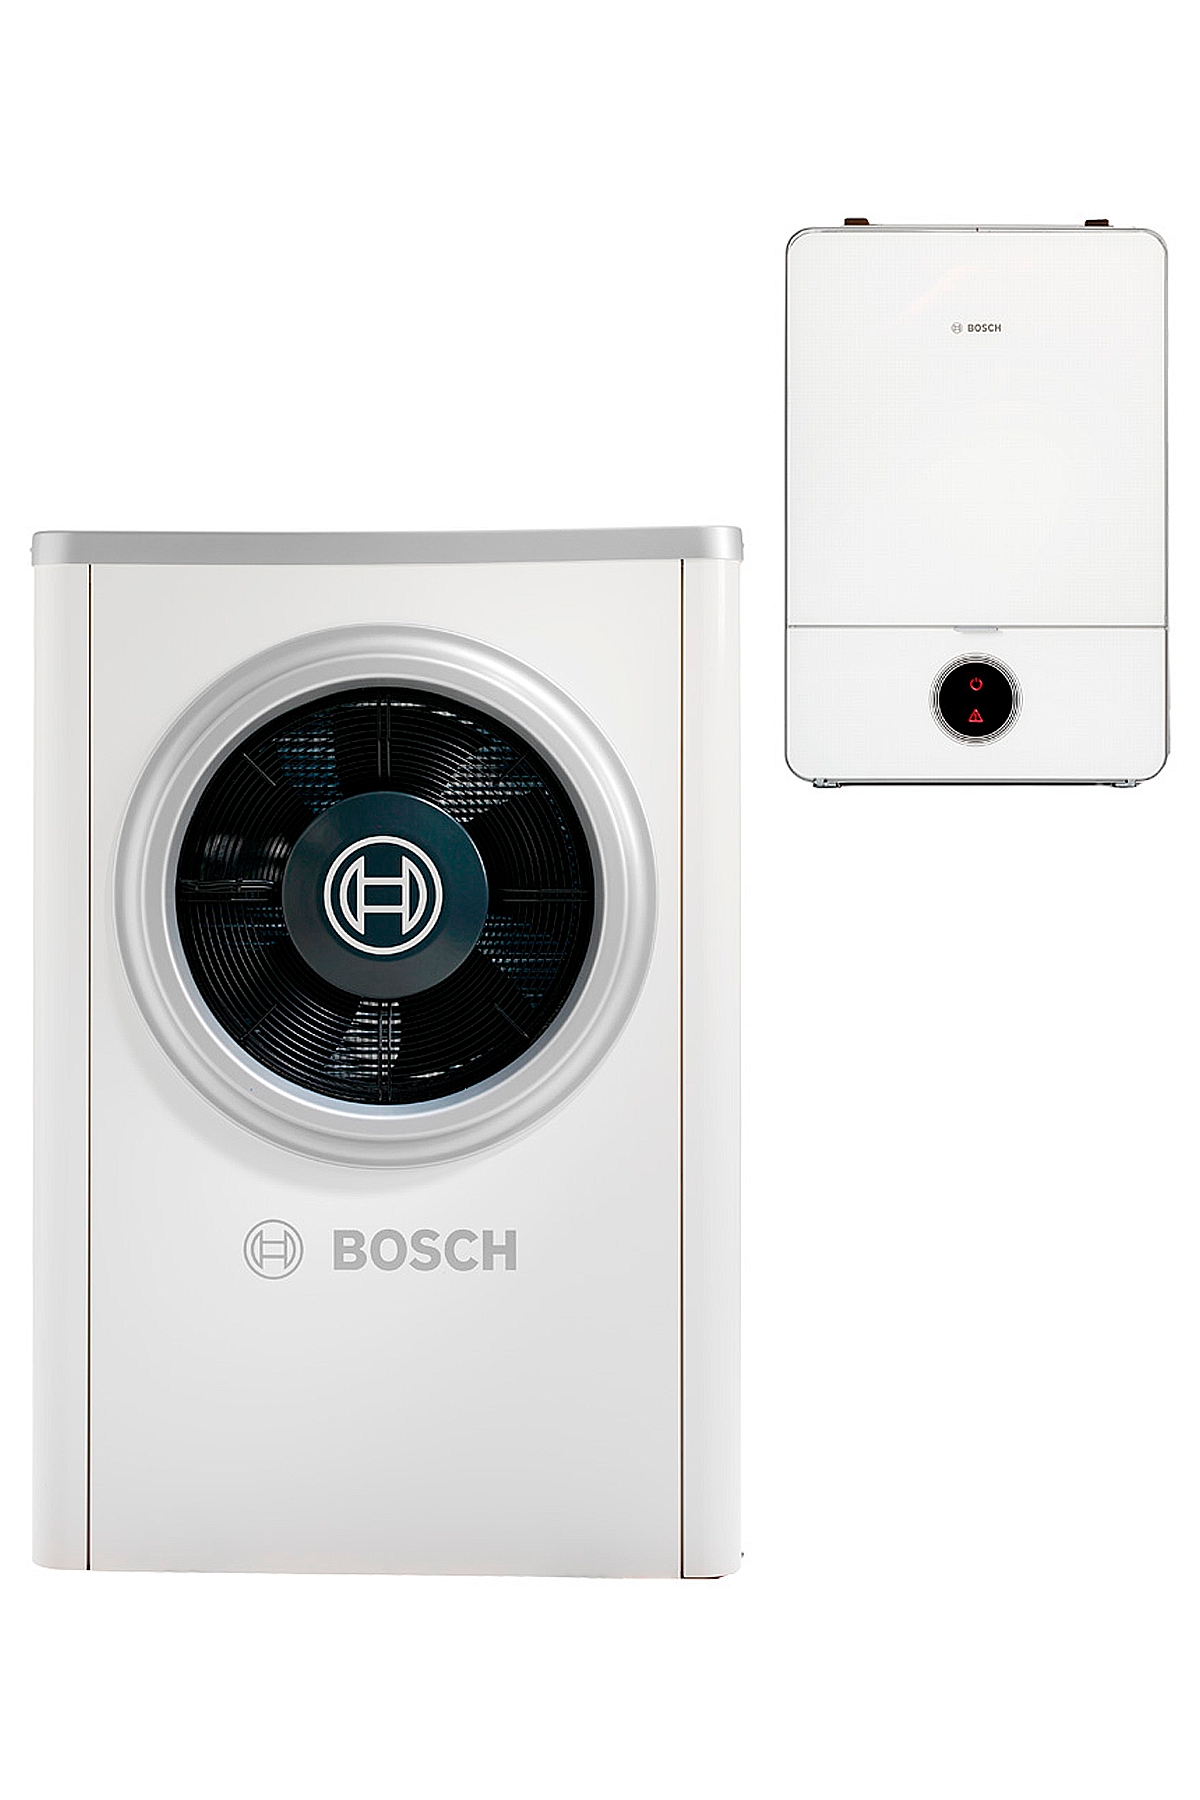 Тепловой насос Bosch Compress 7000i AW 7 B в интернет-магазине, главное фото